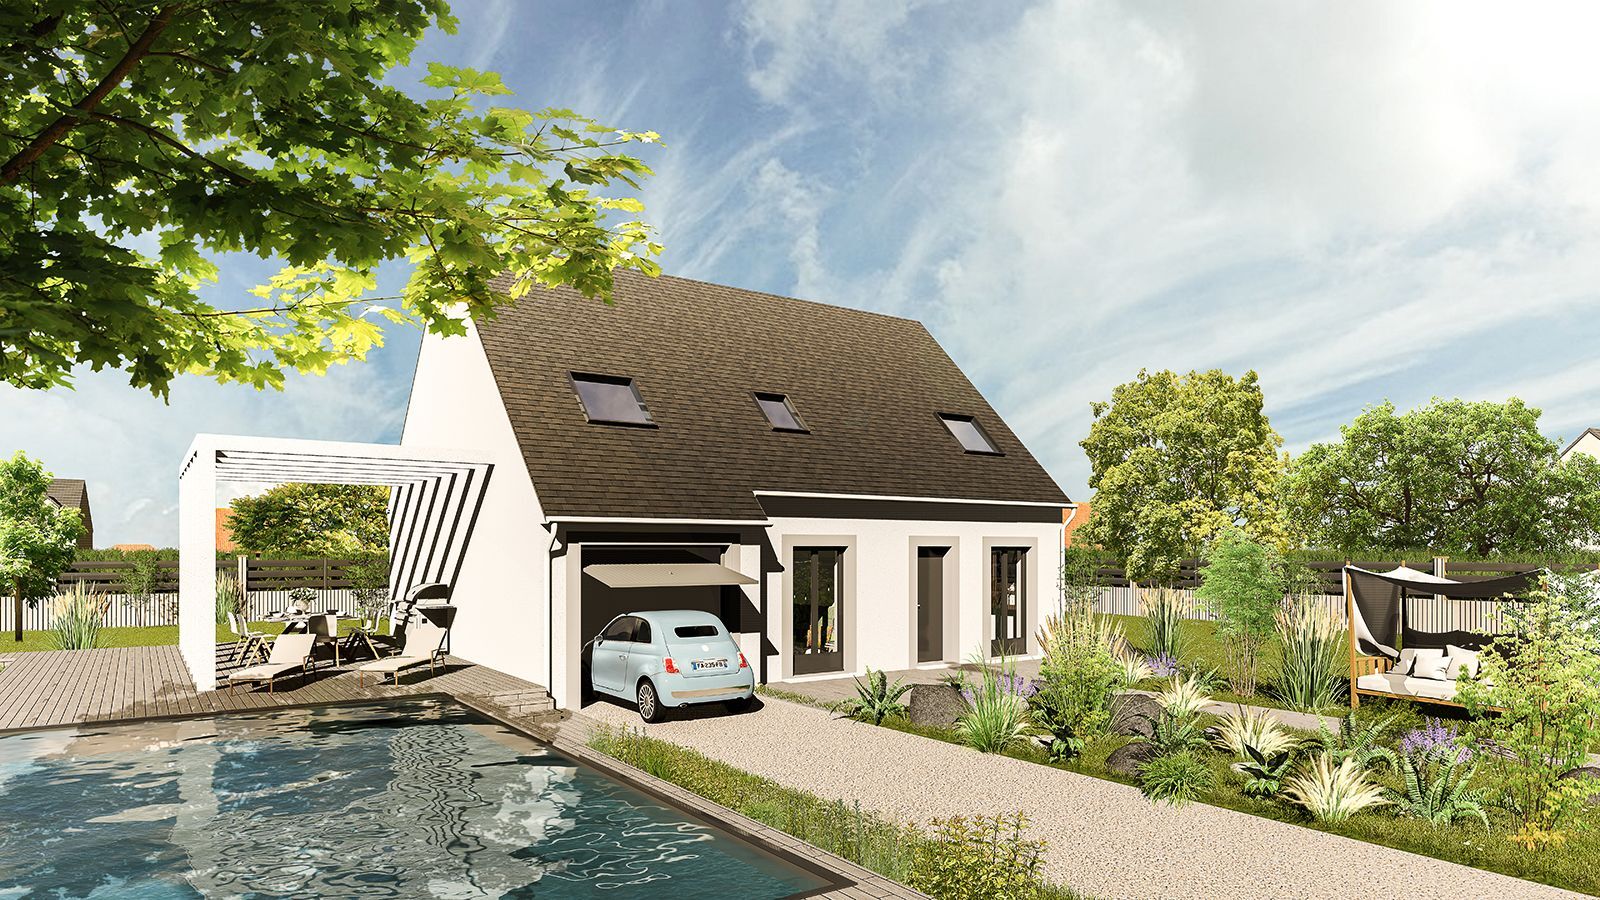 Vente Maison neuve 112 m² à Tremblay-les-Villages 226 939 €